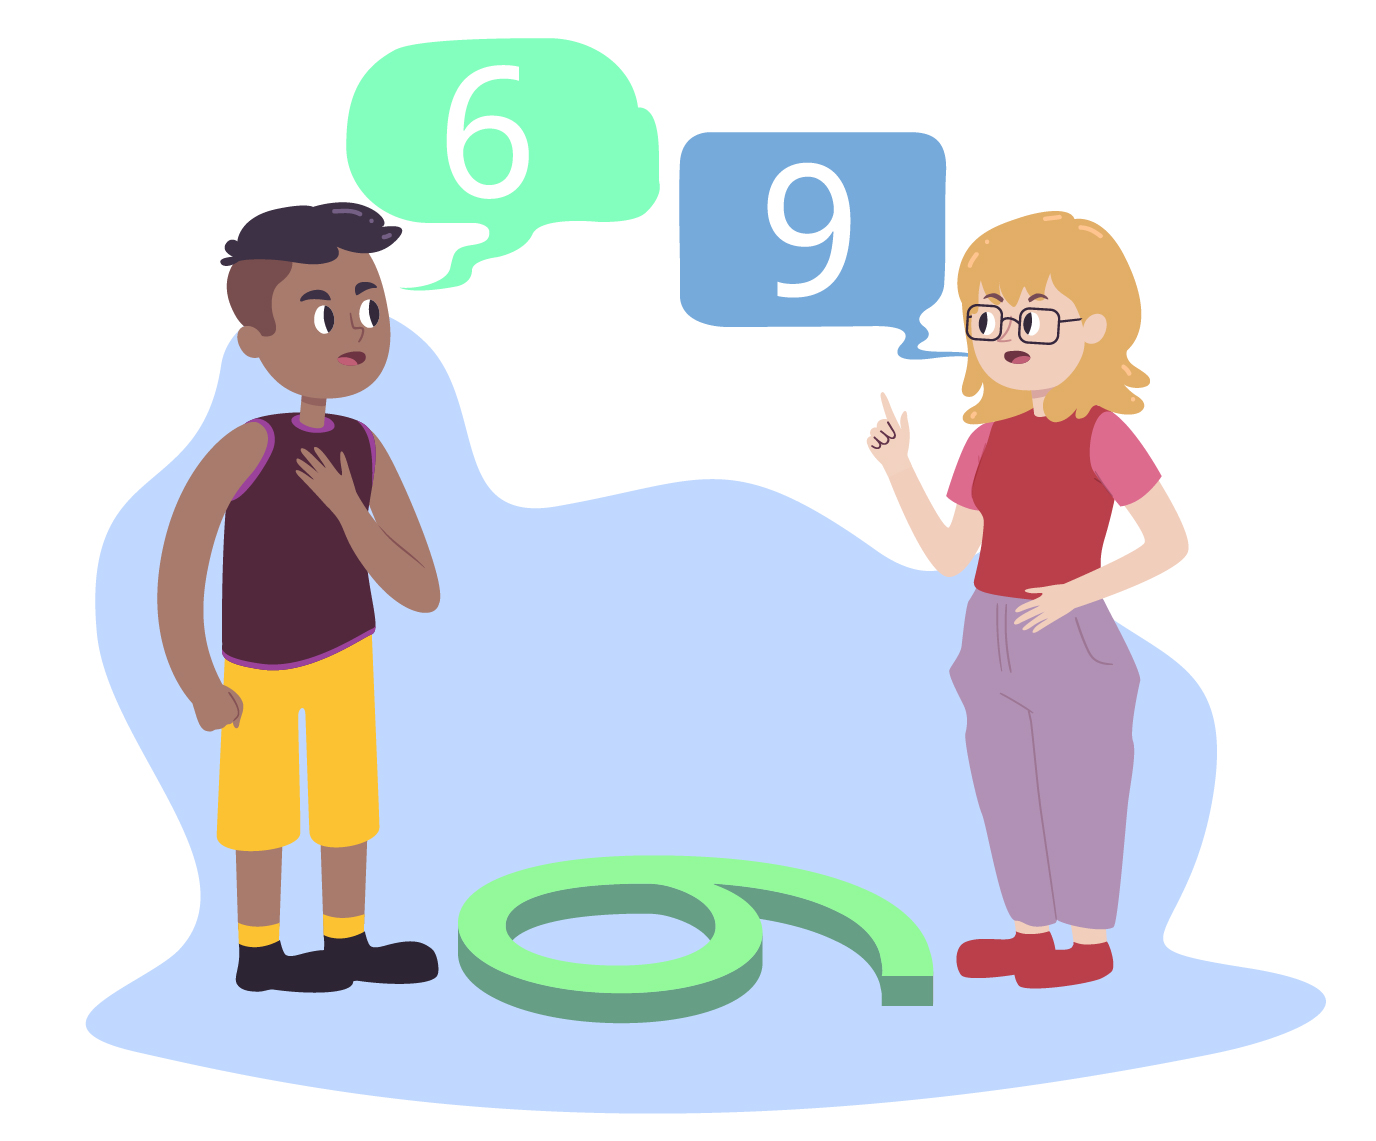 Imagen de dos personas discutiendo si es 6 o es 9, debido a su perspectiva y ubicación.